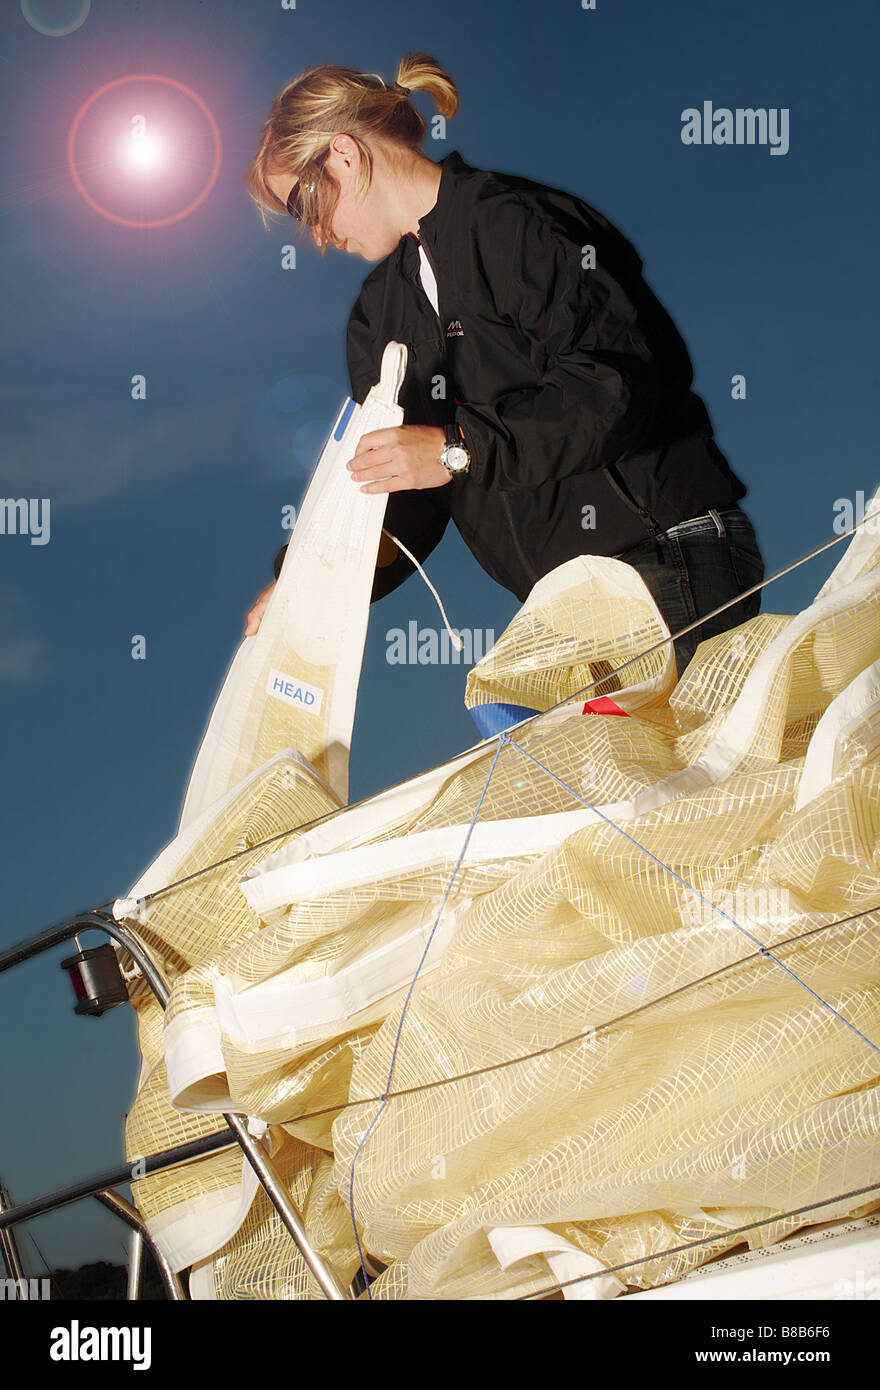 Jeune fille d'environ 25 ans pliage de la voile à bord d'un voilier. Banque D'Images